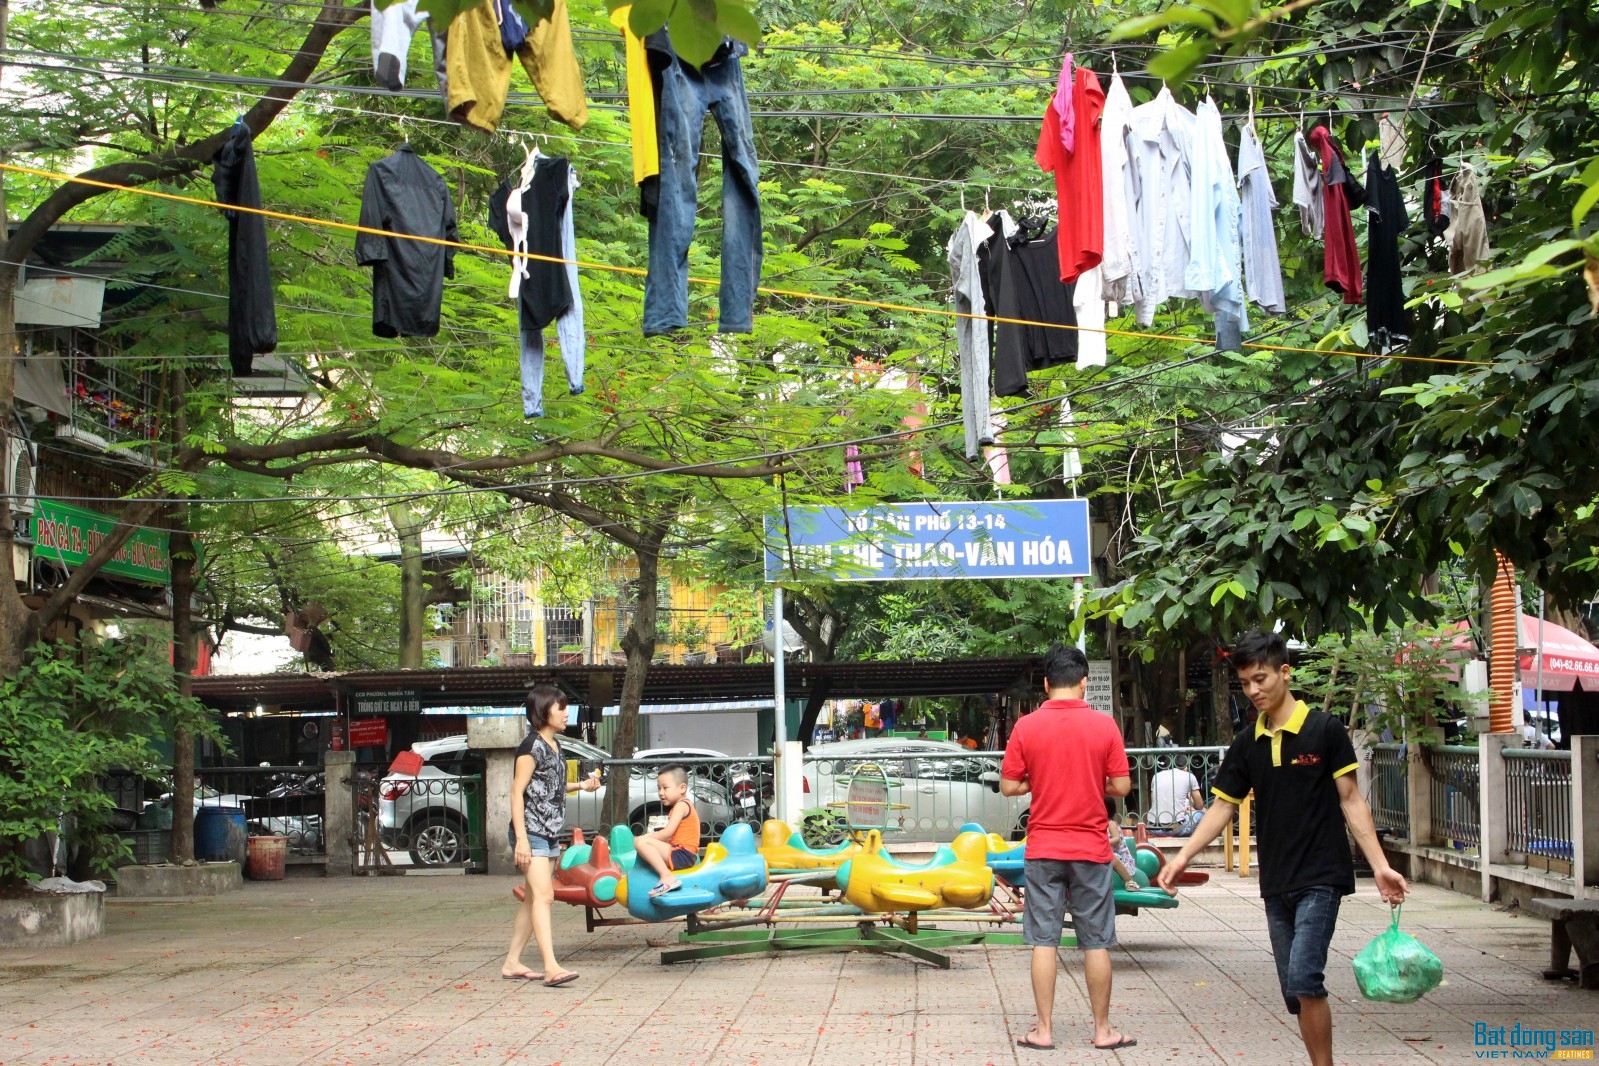 Tại khu tập thể Nghĩa Tân có rất nhiều những khoảng không gian xanh dành làm sân chơi cho trẻ em nhưng người dân cố tình chiếm dụng làm nơi sinh hoạt riêng gây mất mỹ quan đô thị.